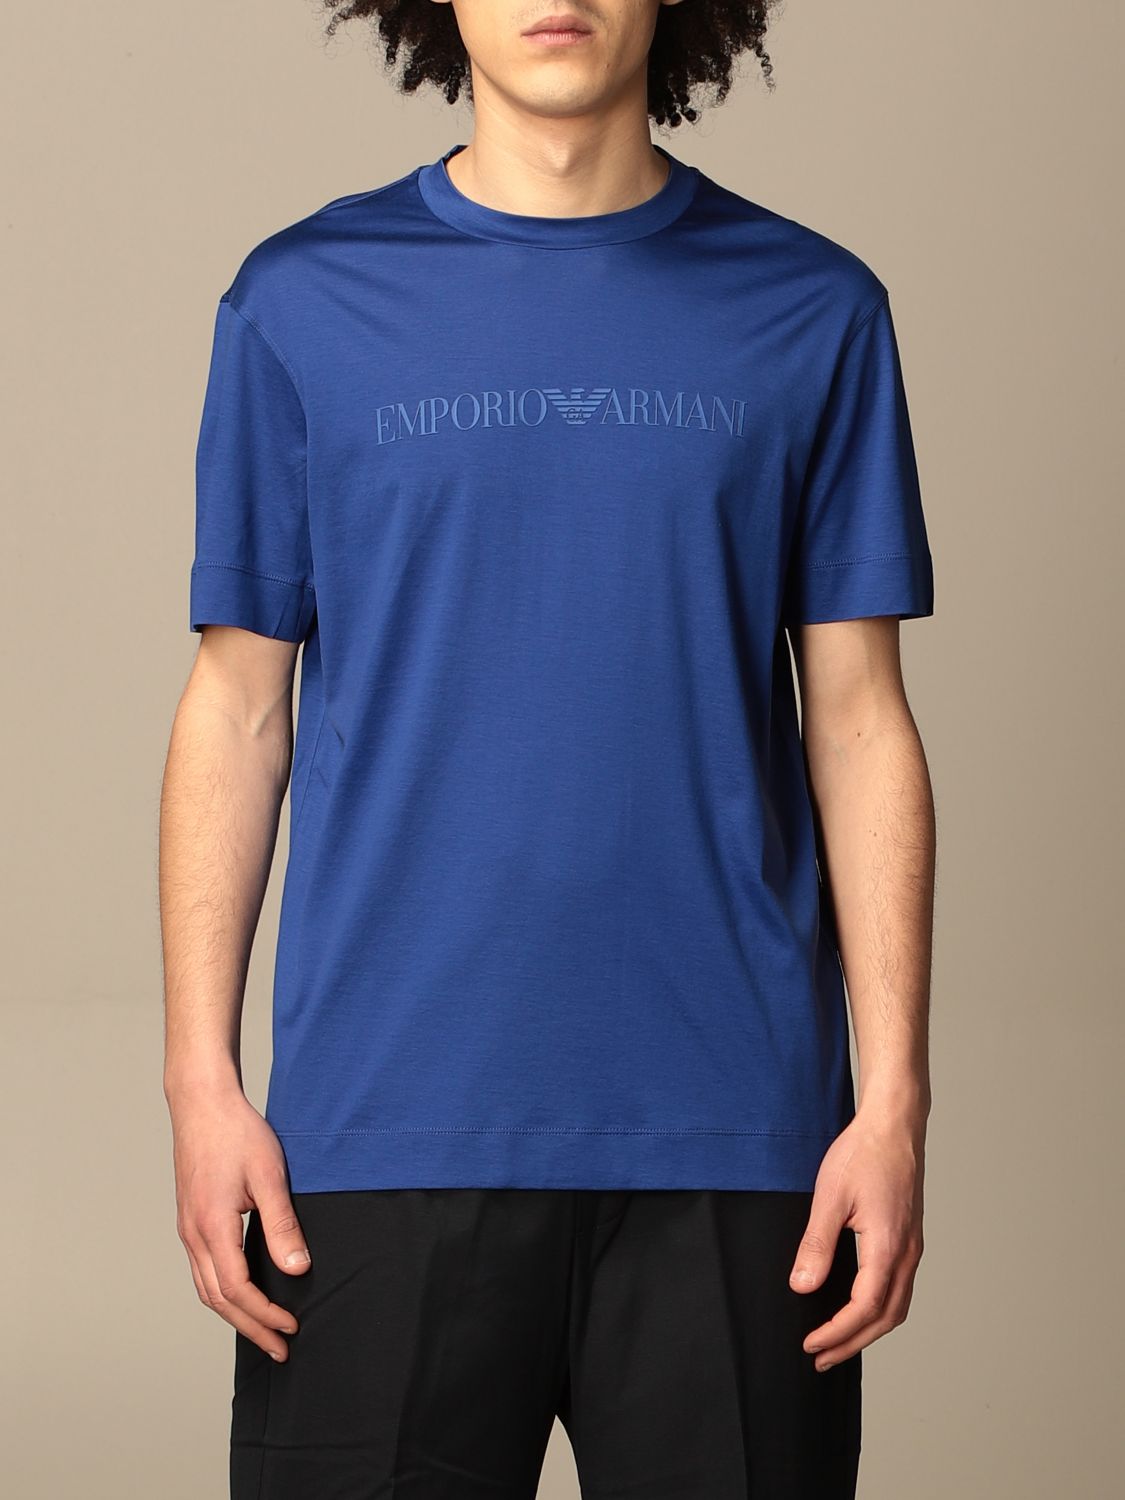 EMPORIO ARMANI Basic tshirt with logo Blue TShirt Emporio Armani